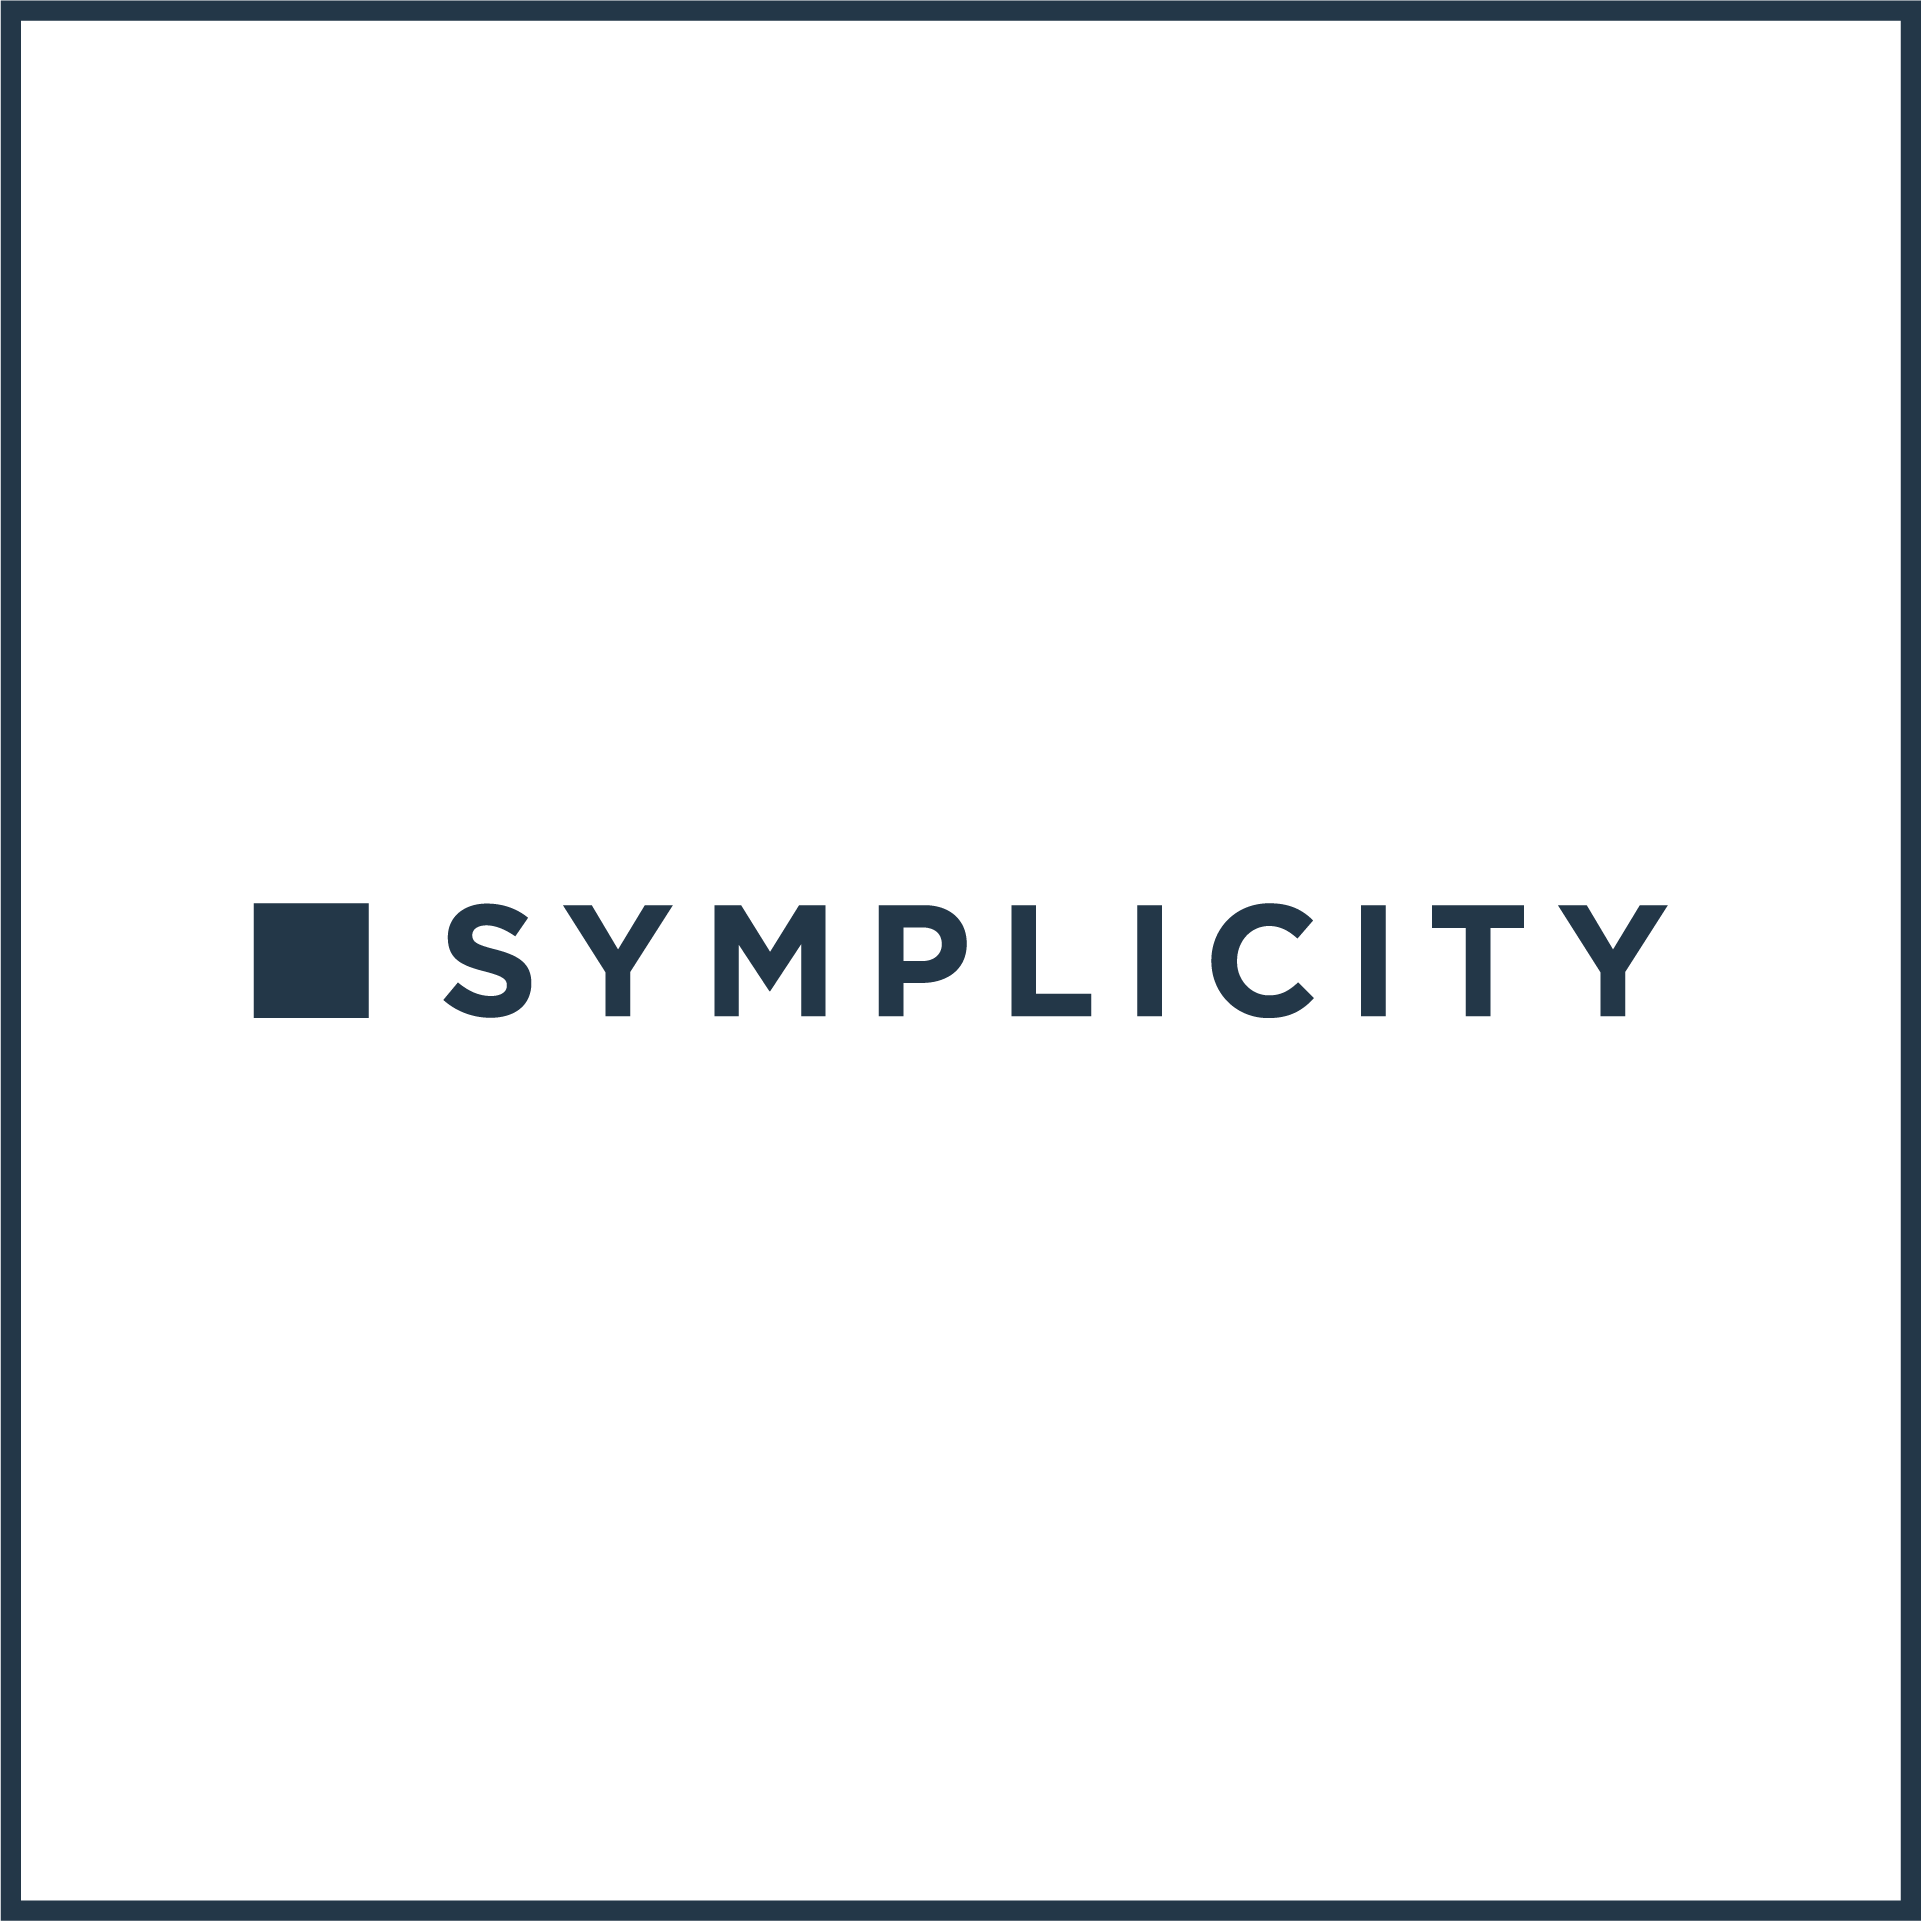 logo_square-outline_digital_symplicity_dark